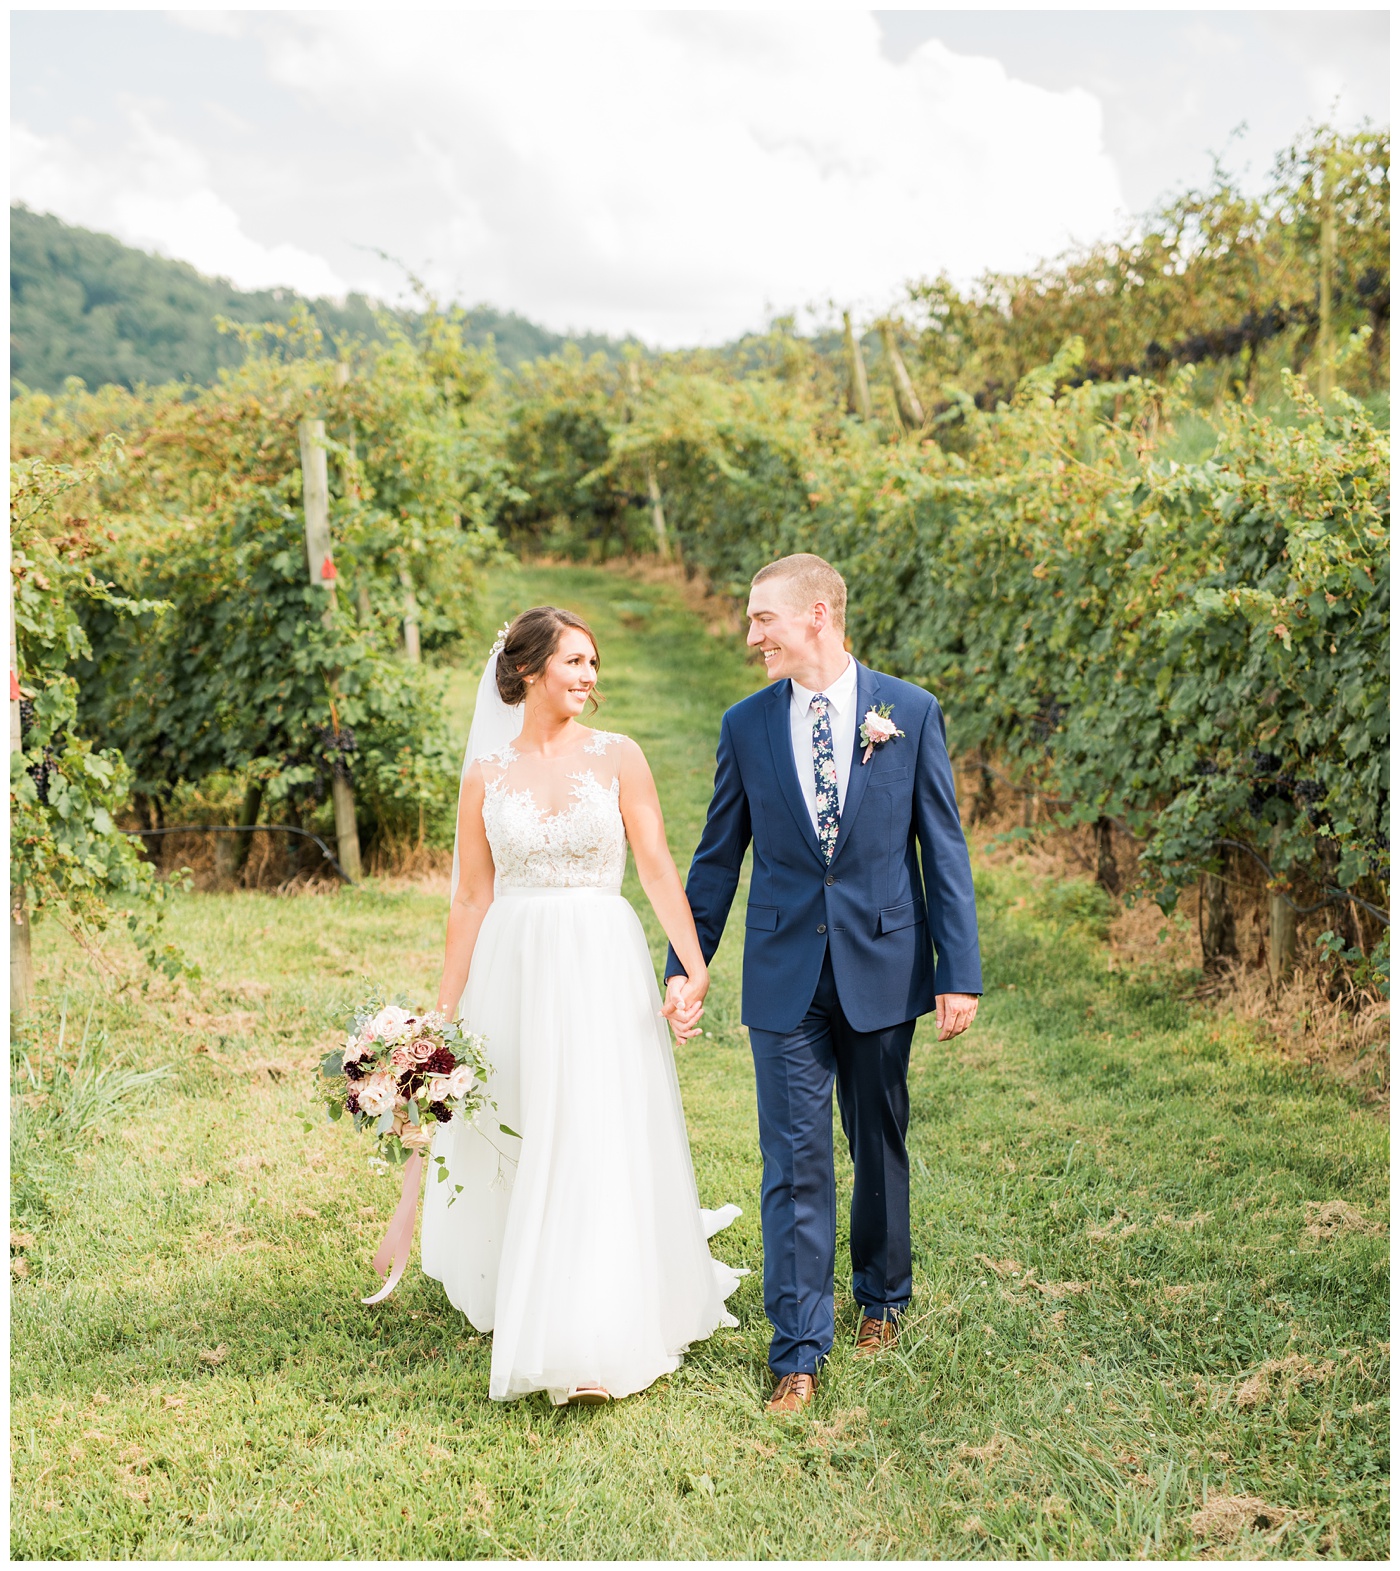 DelFosse vineyard wedding couple in the vines